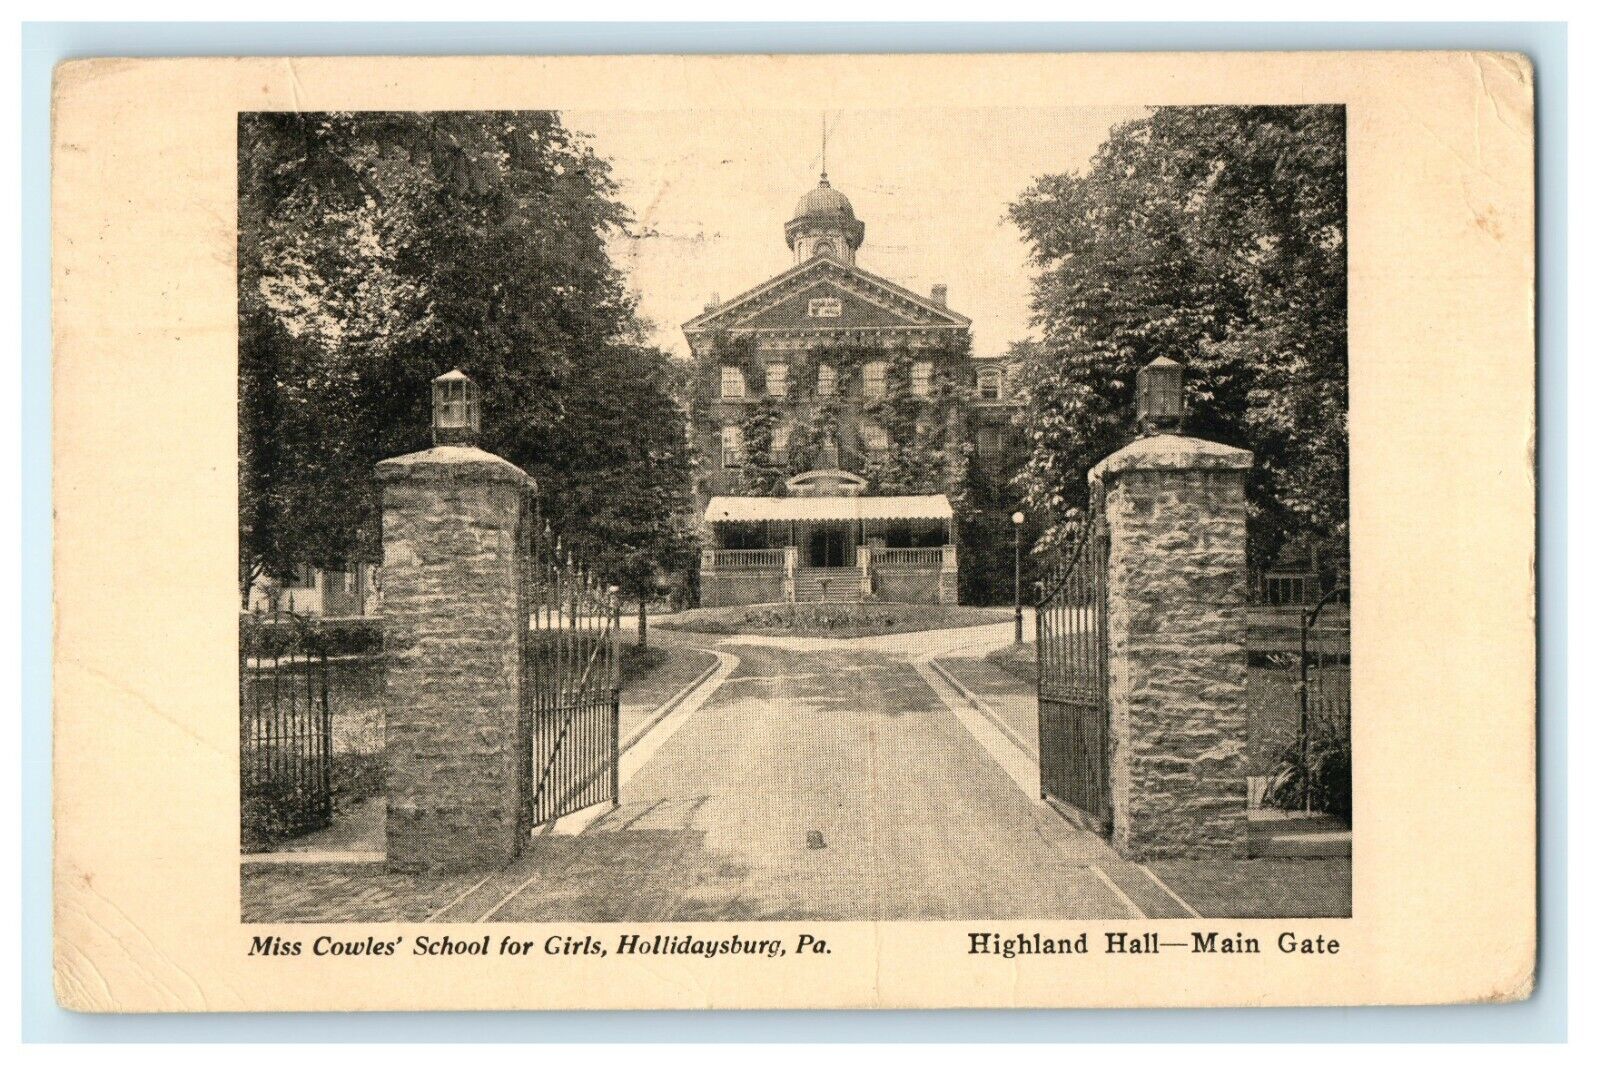 1915 Highland Hall Girls School Maine Gate Hollidaysburg Pennsylvania Postcard